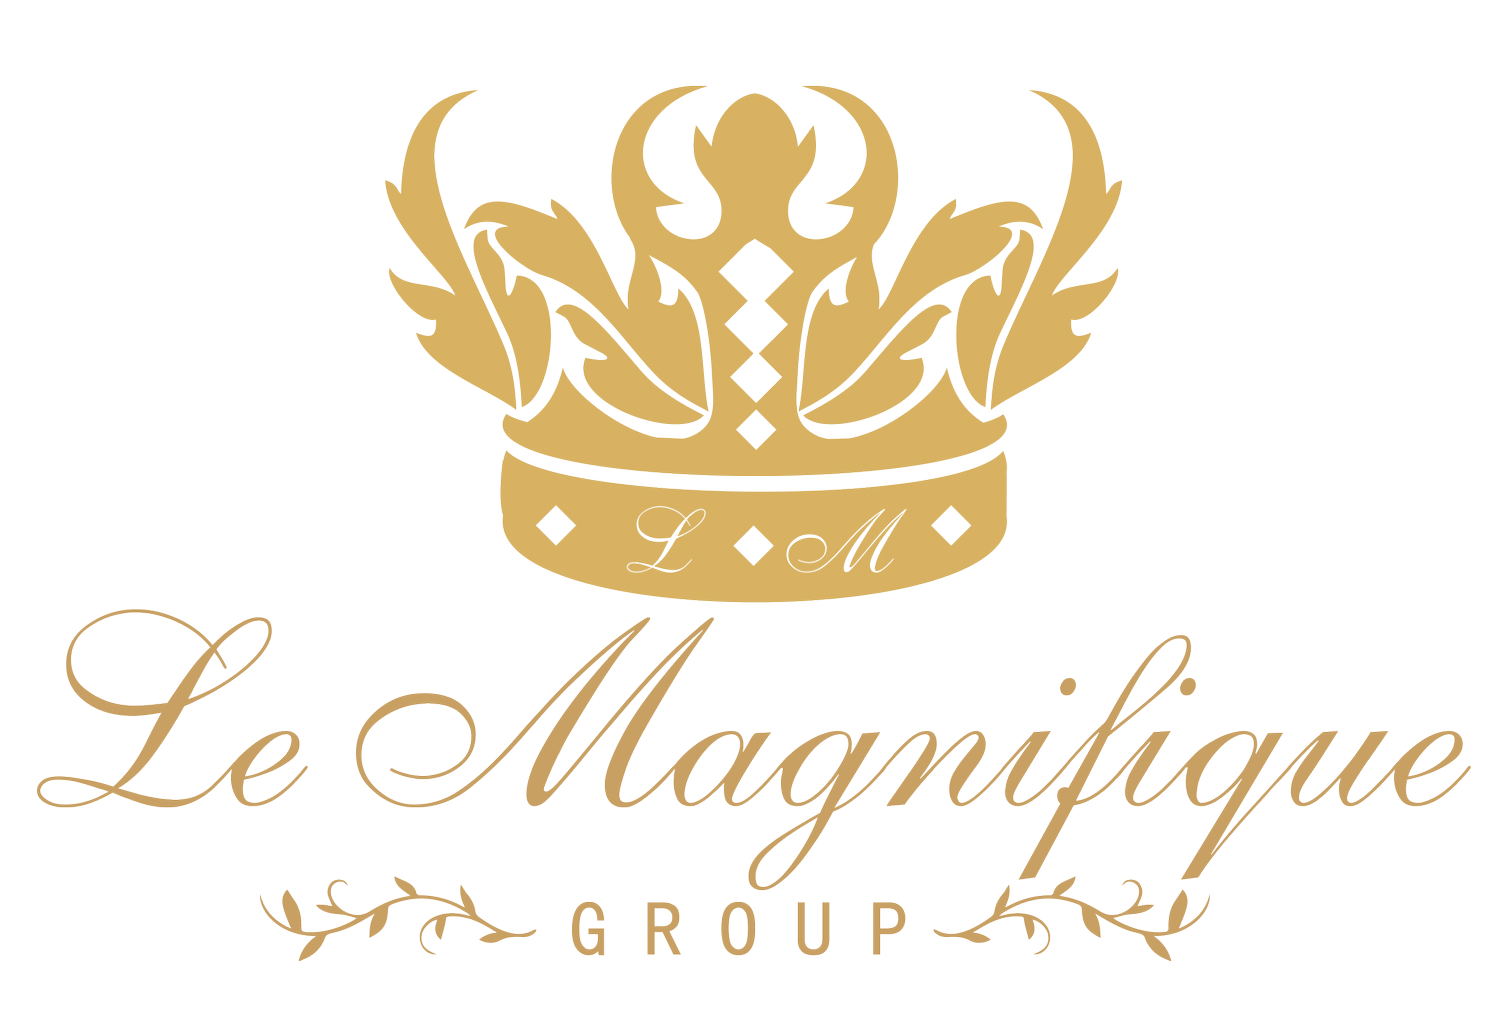 Le Magnifique Group